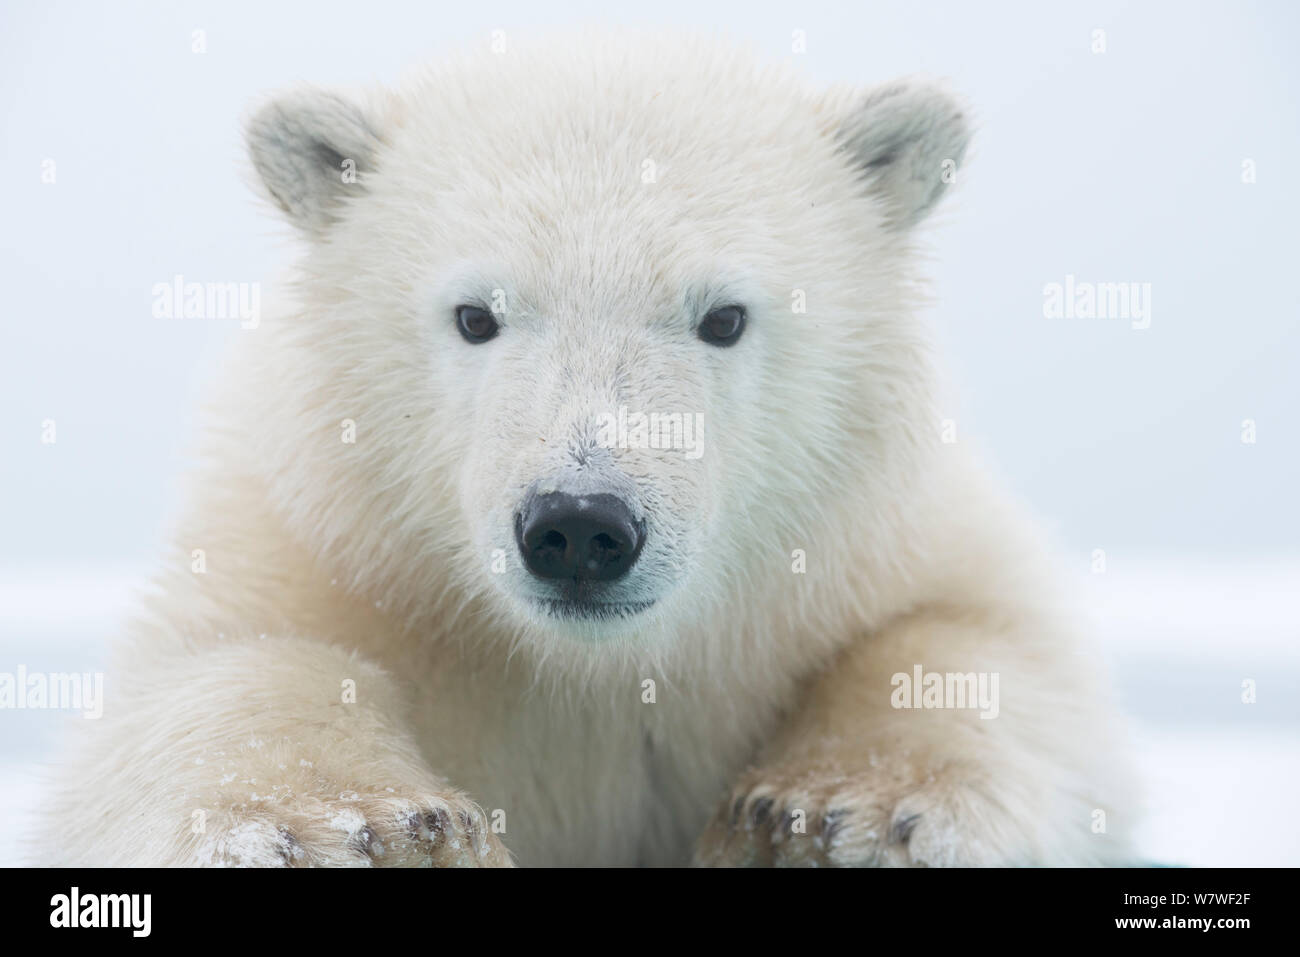 Polar bear (Ursus maritimus) portrait of a yearling along Bernard Spit, a barrier island, during autumn freeze up, along the eastern Arctic coast of Alaska, Beaufort Sea, September Stock Photo